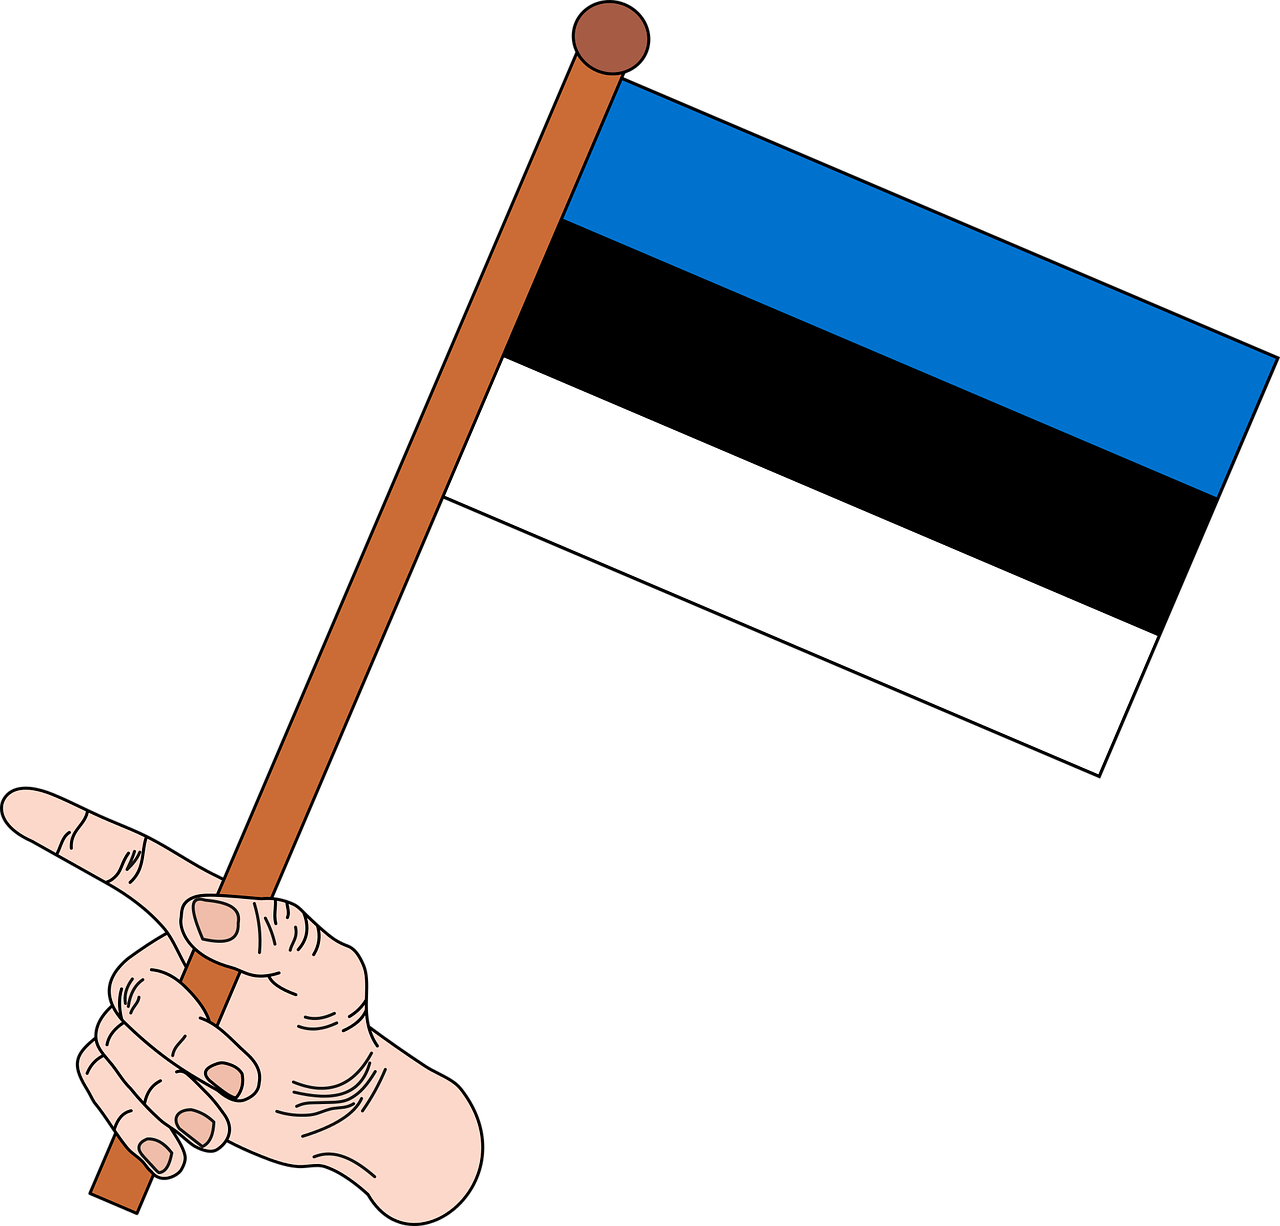 flag the flag of estonia estonia free photo